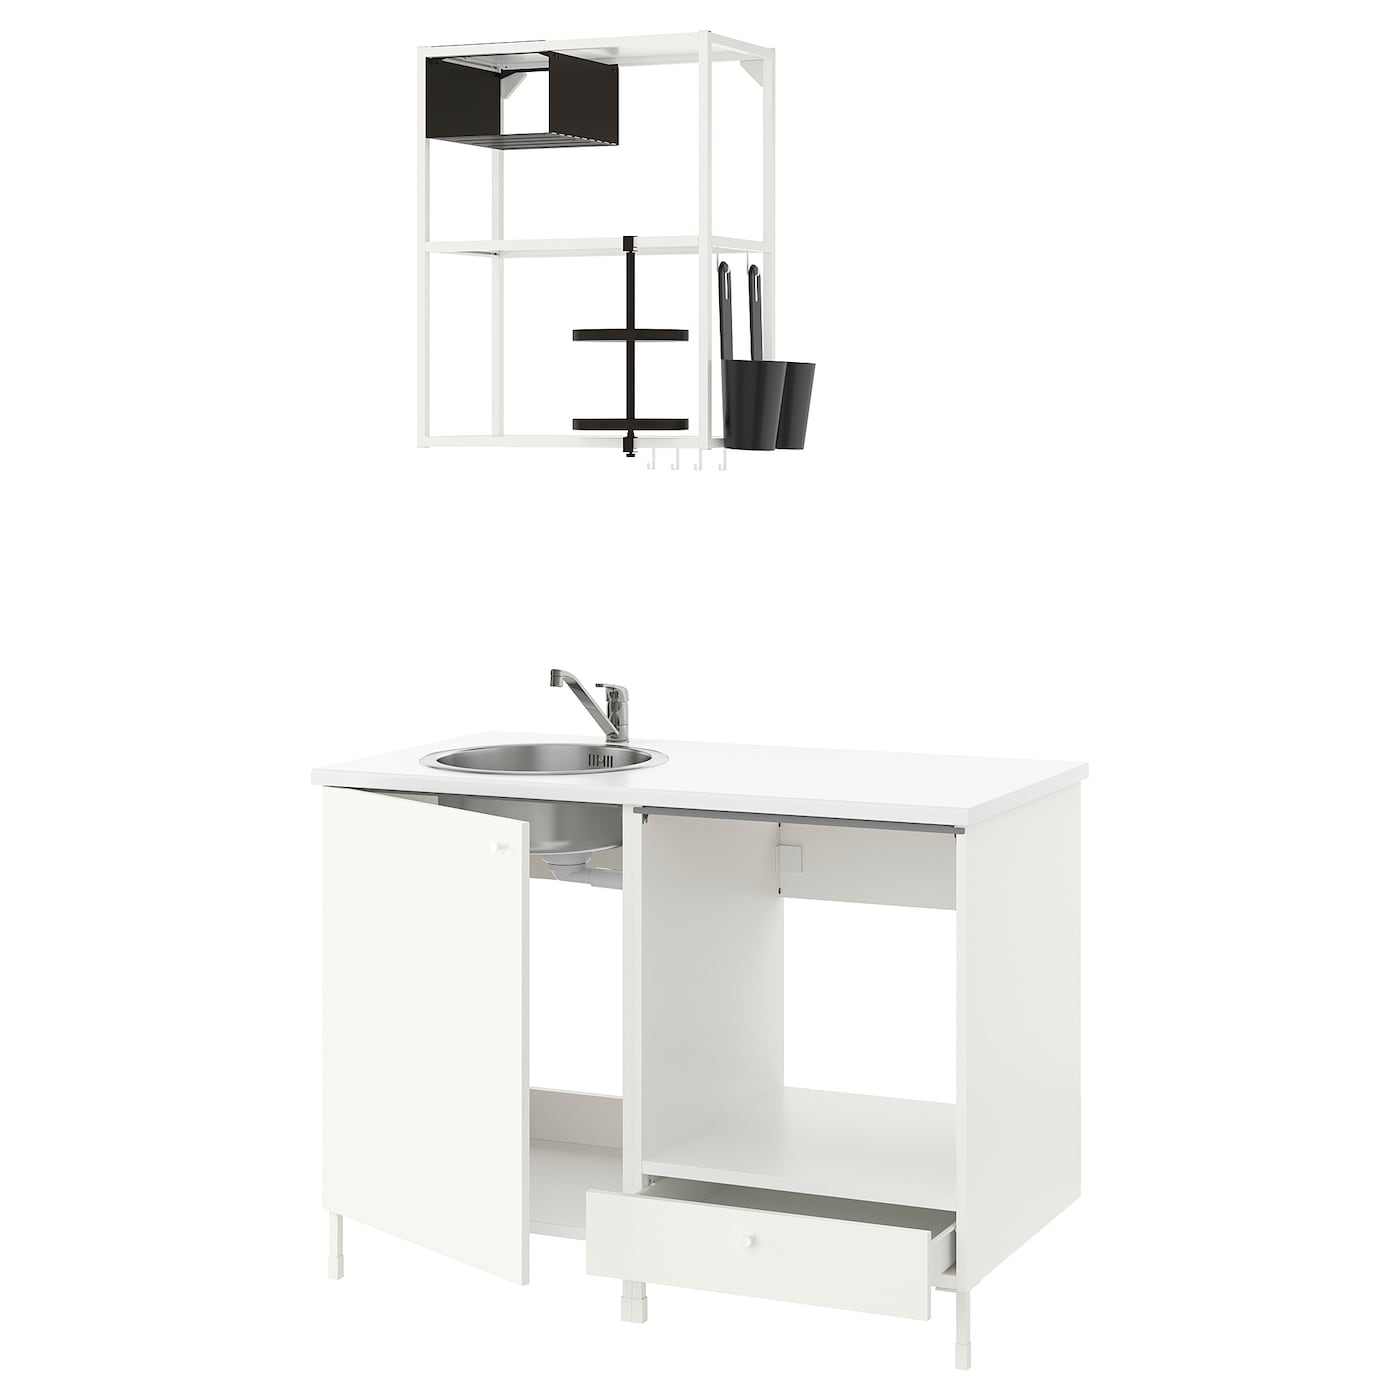 Кухонная комбинация для хранения -  ENHET  IKEA/ ЭНХЕТ ИКЕА, 123x63,5x222 см, белый